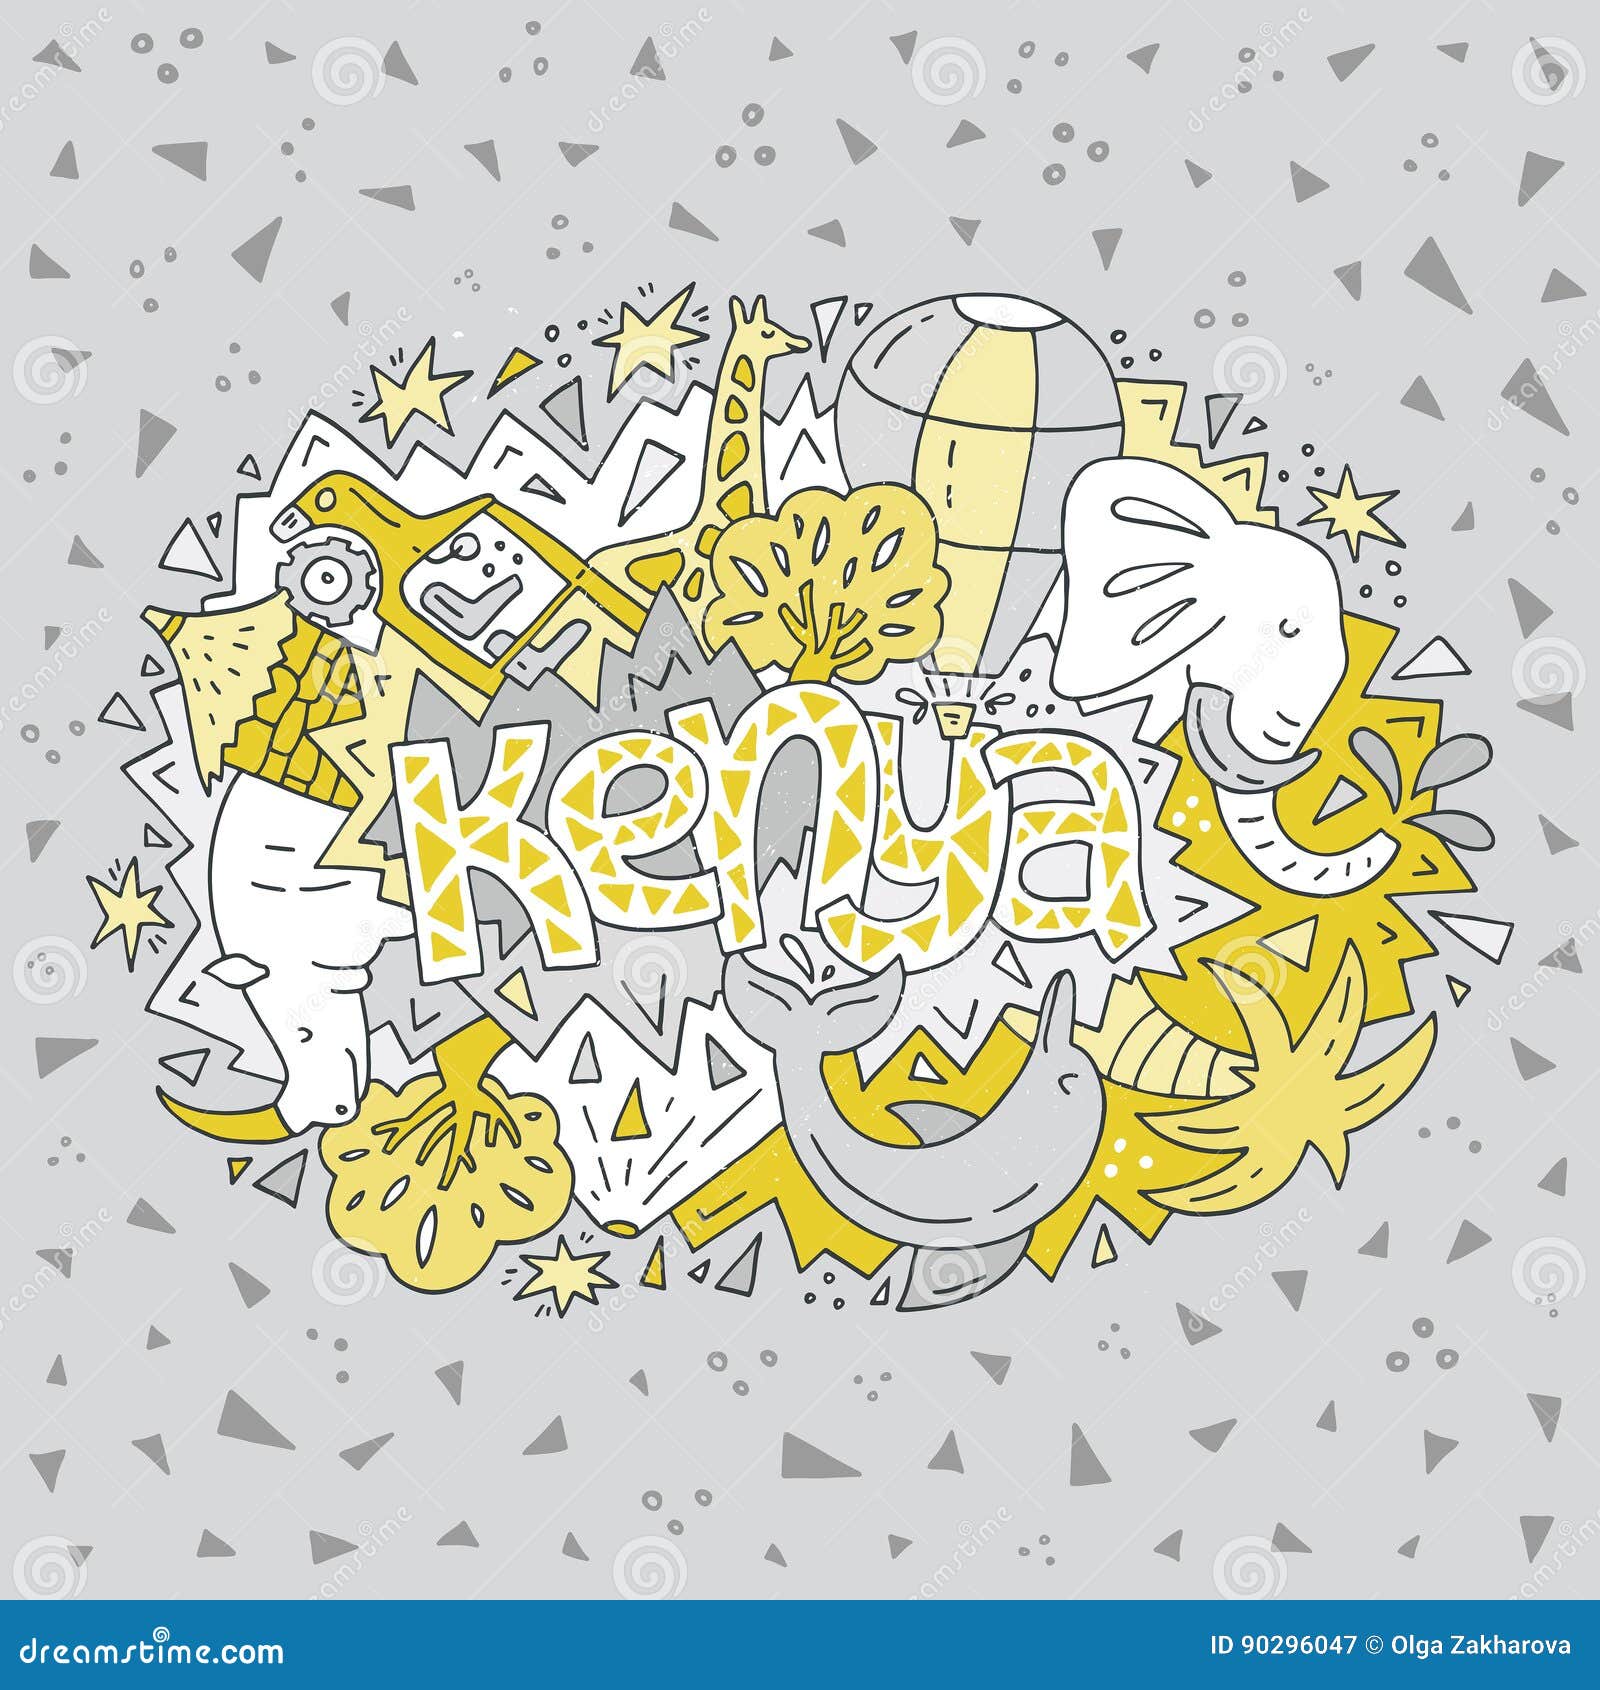 Kenya symbols illustration stock vector. Illustration of hand - 90296047